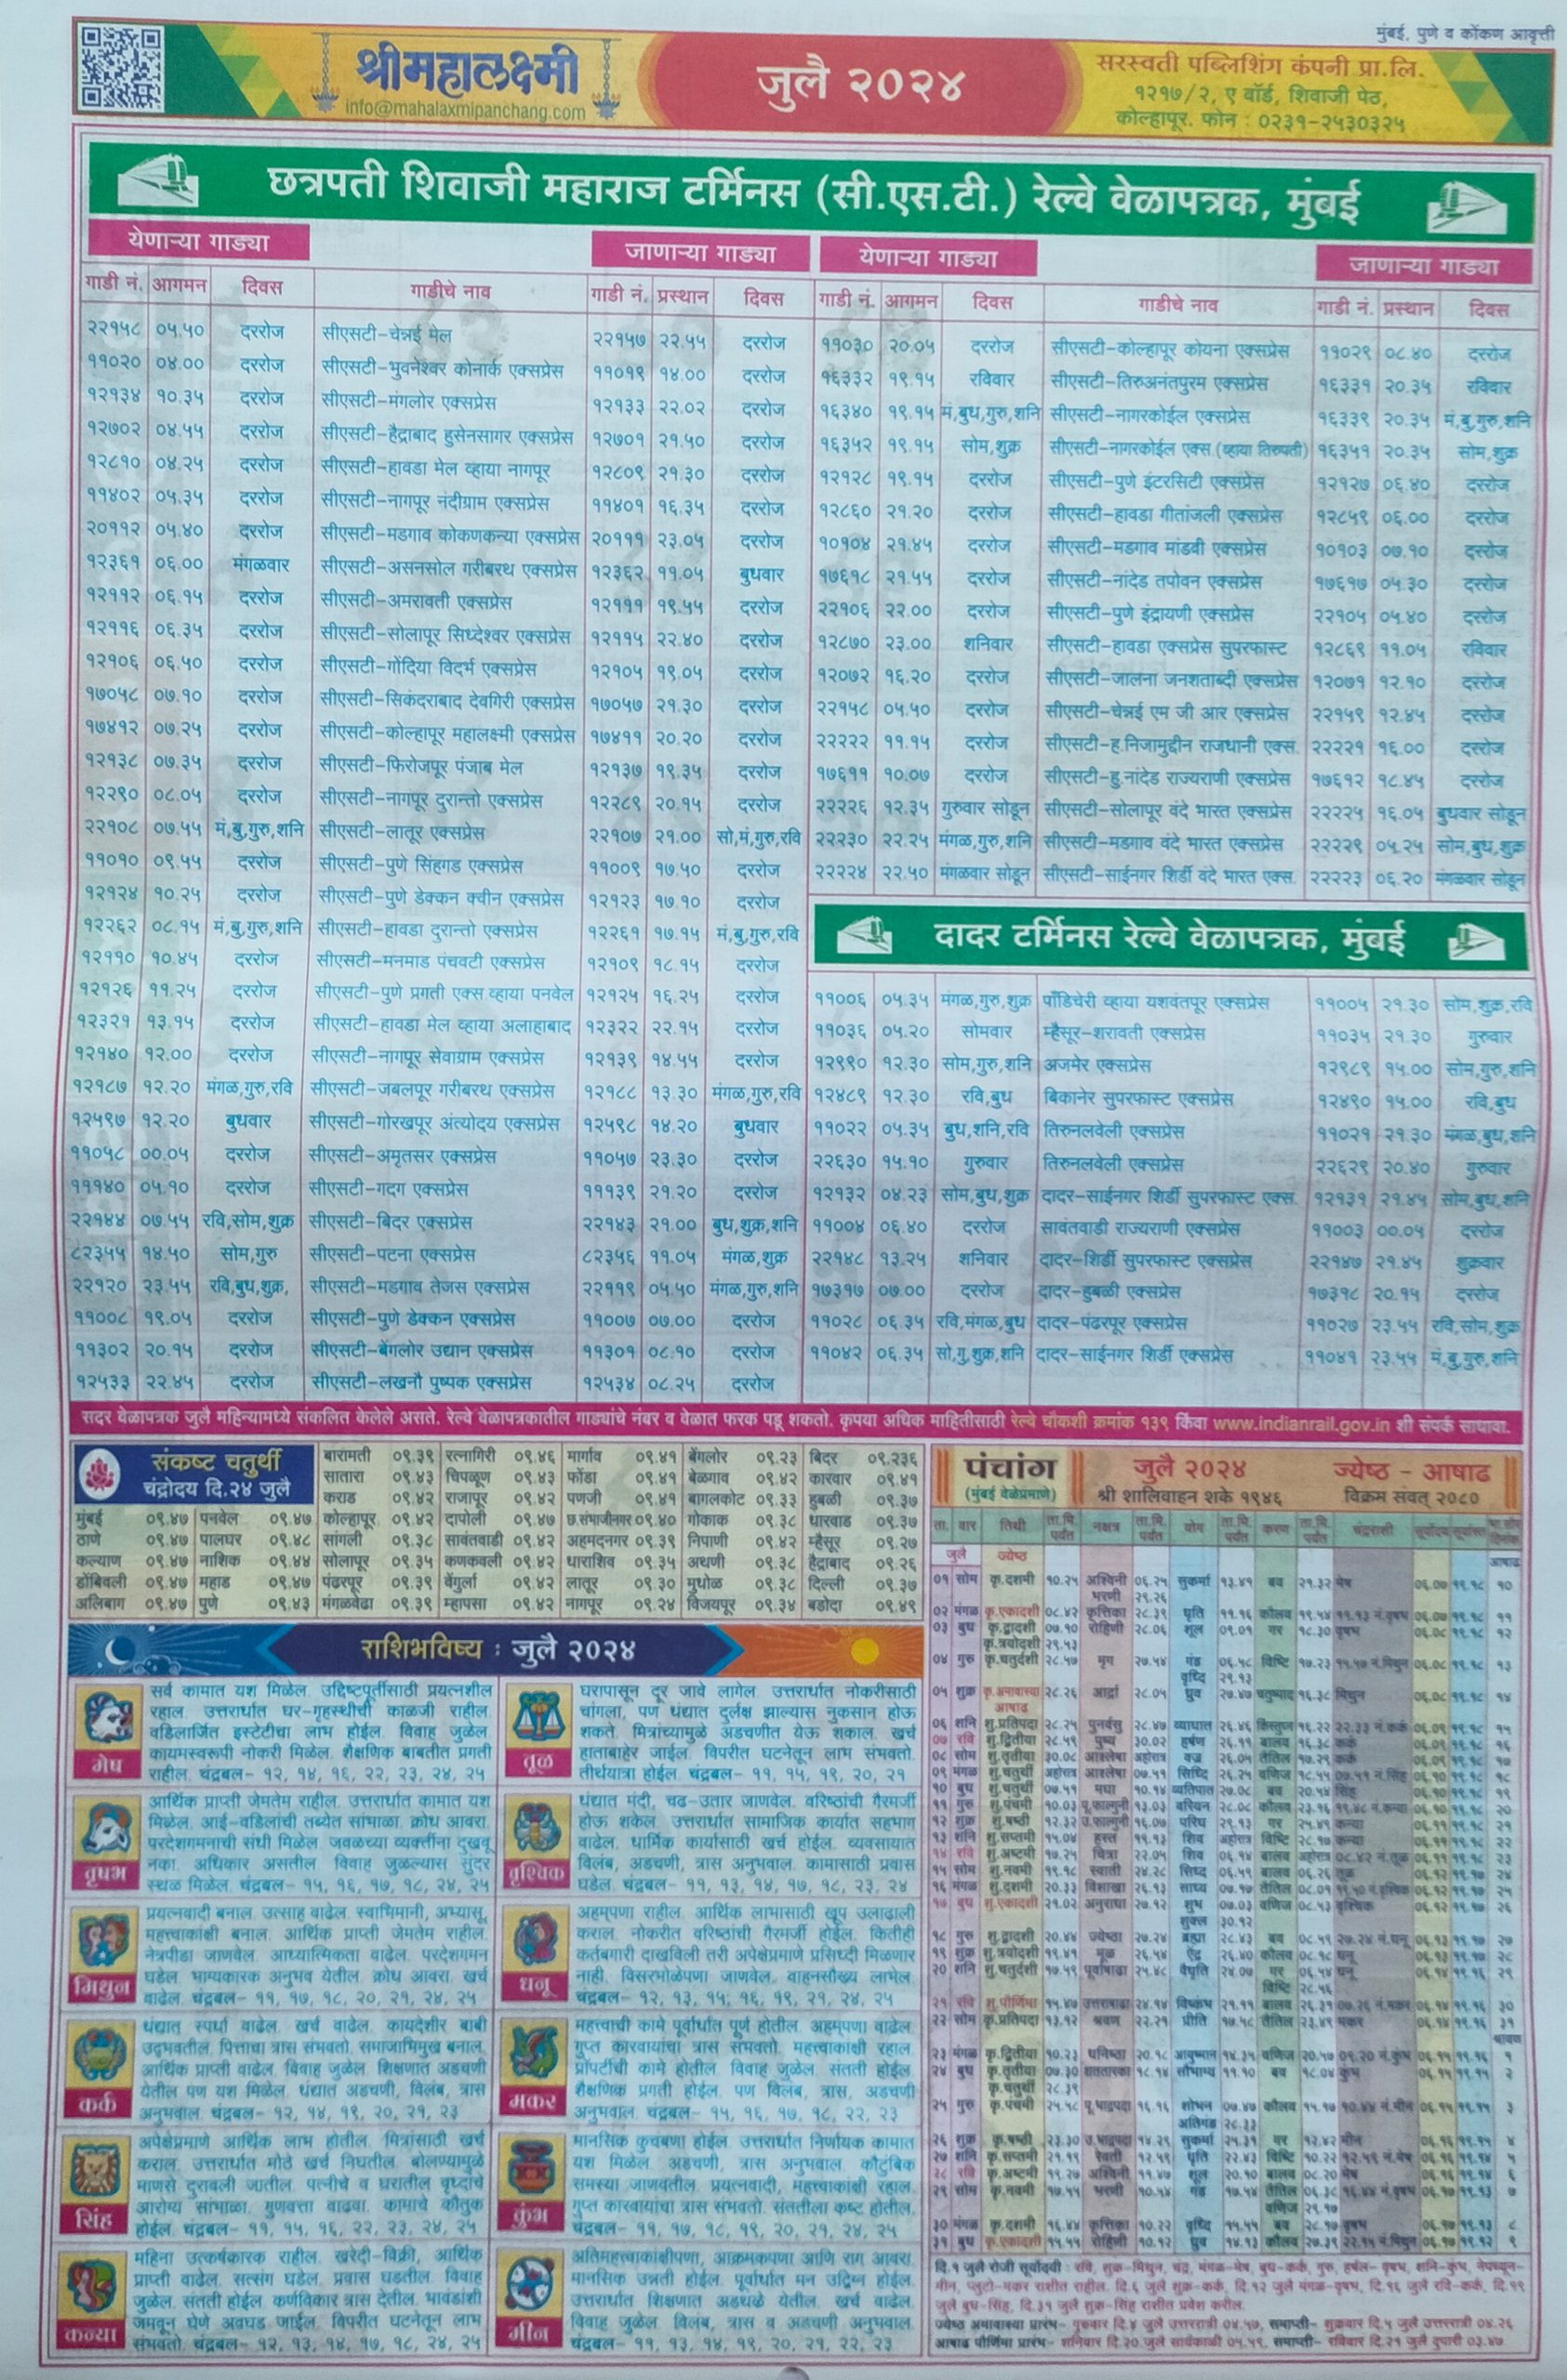 Mahalaxmi Calendar 2024 Marathi, श्री महालक्ष्मी मराठी कैलेंडर 2024